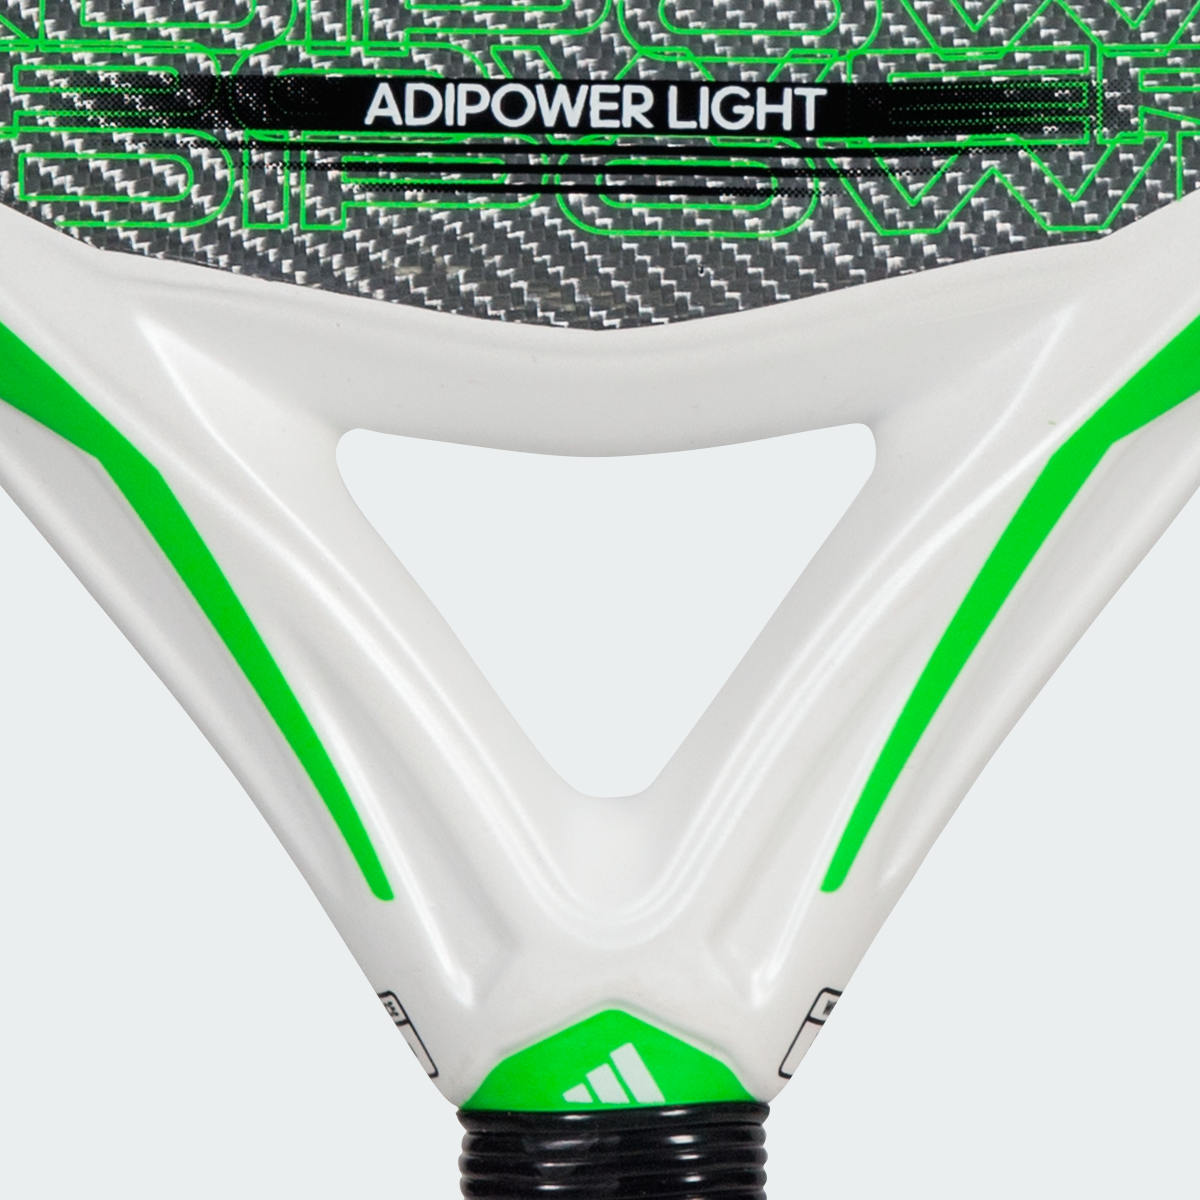 Adidas ADIPOWER LIGHT 3.3. 5